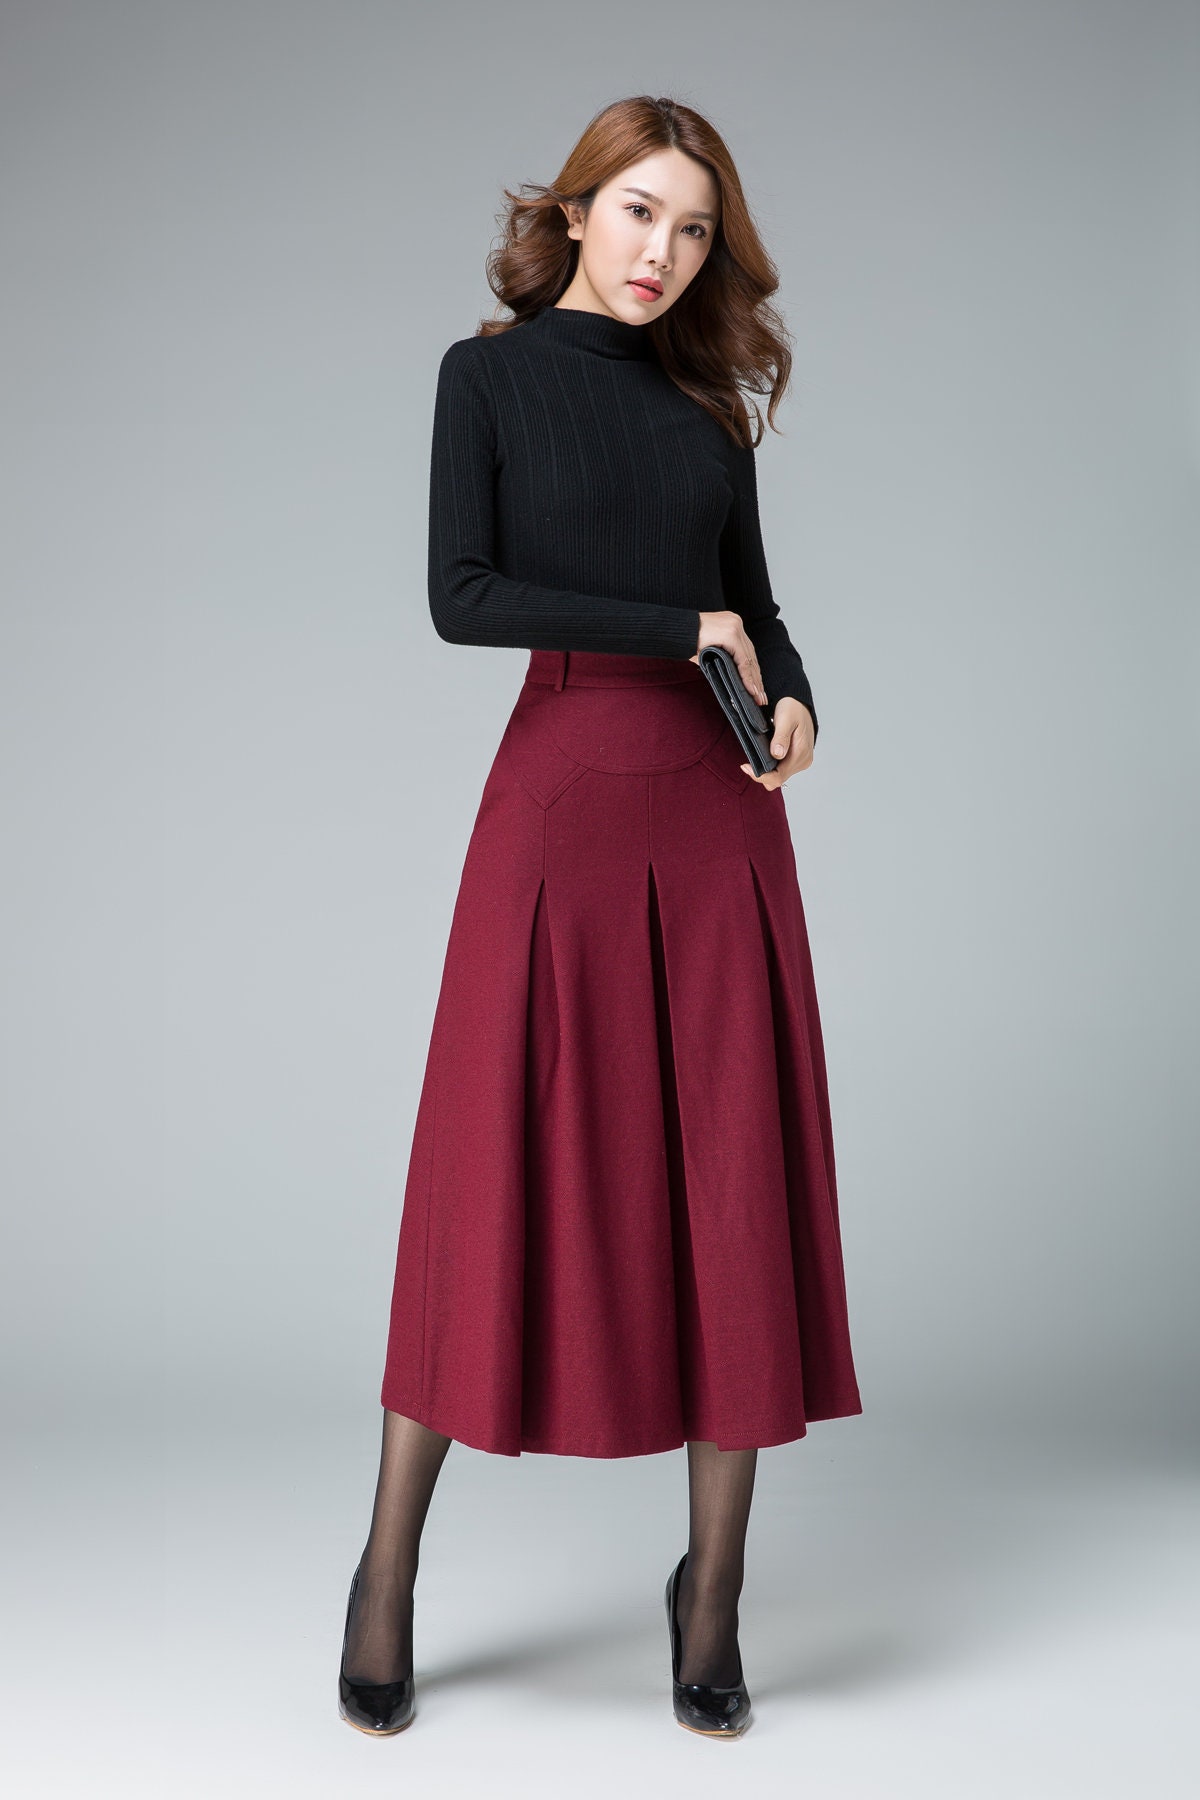 Midi Wool Skirt Red Midi Skirt Office Skirt High Waist | Etsy Canada